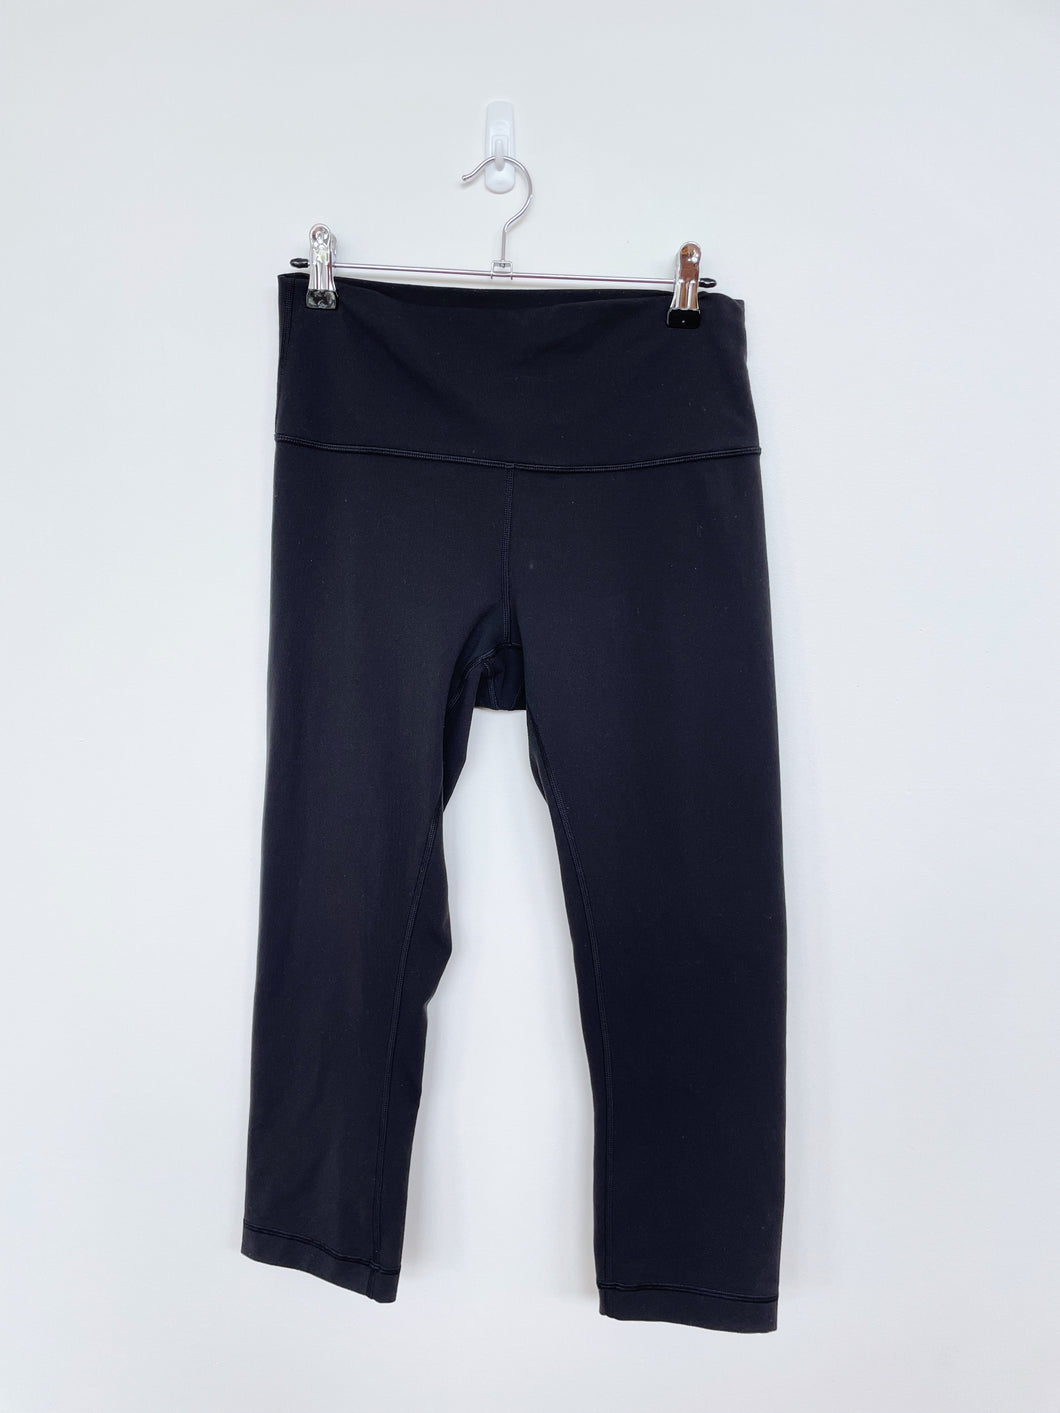 Lululemon Black 3/4 Pants (lulu 8 / NZ 10-12)